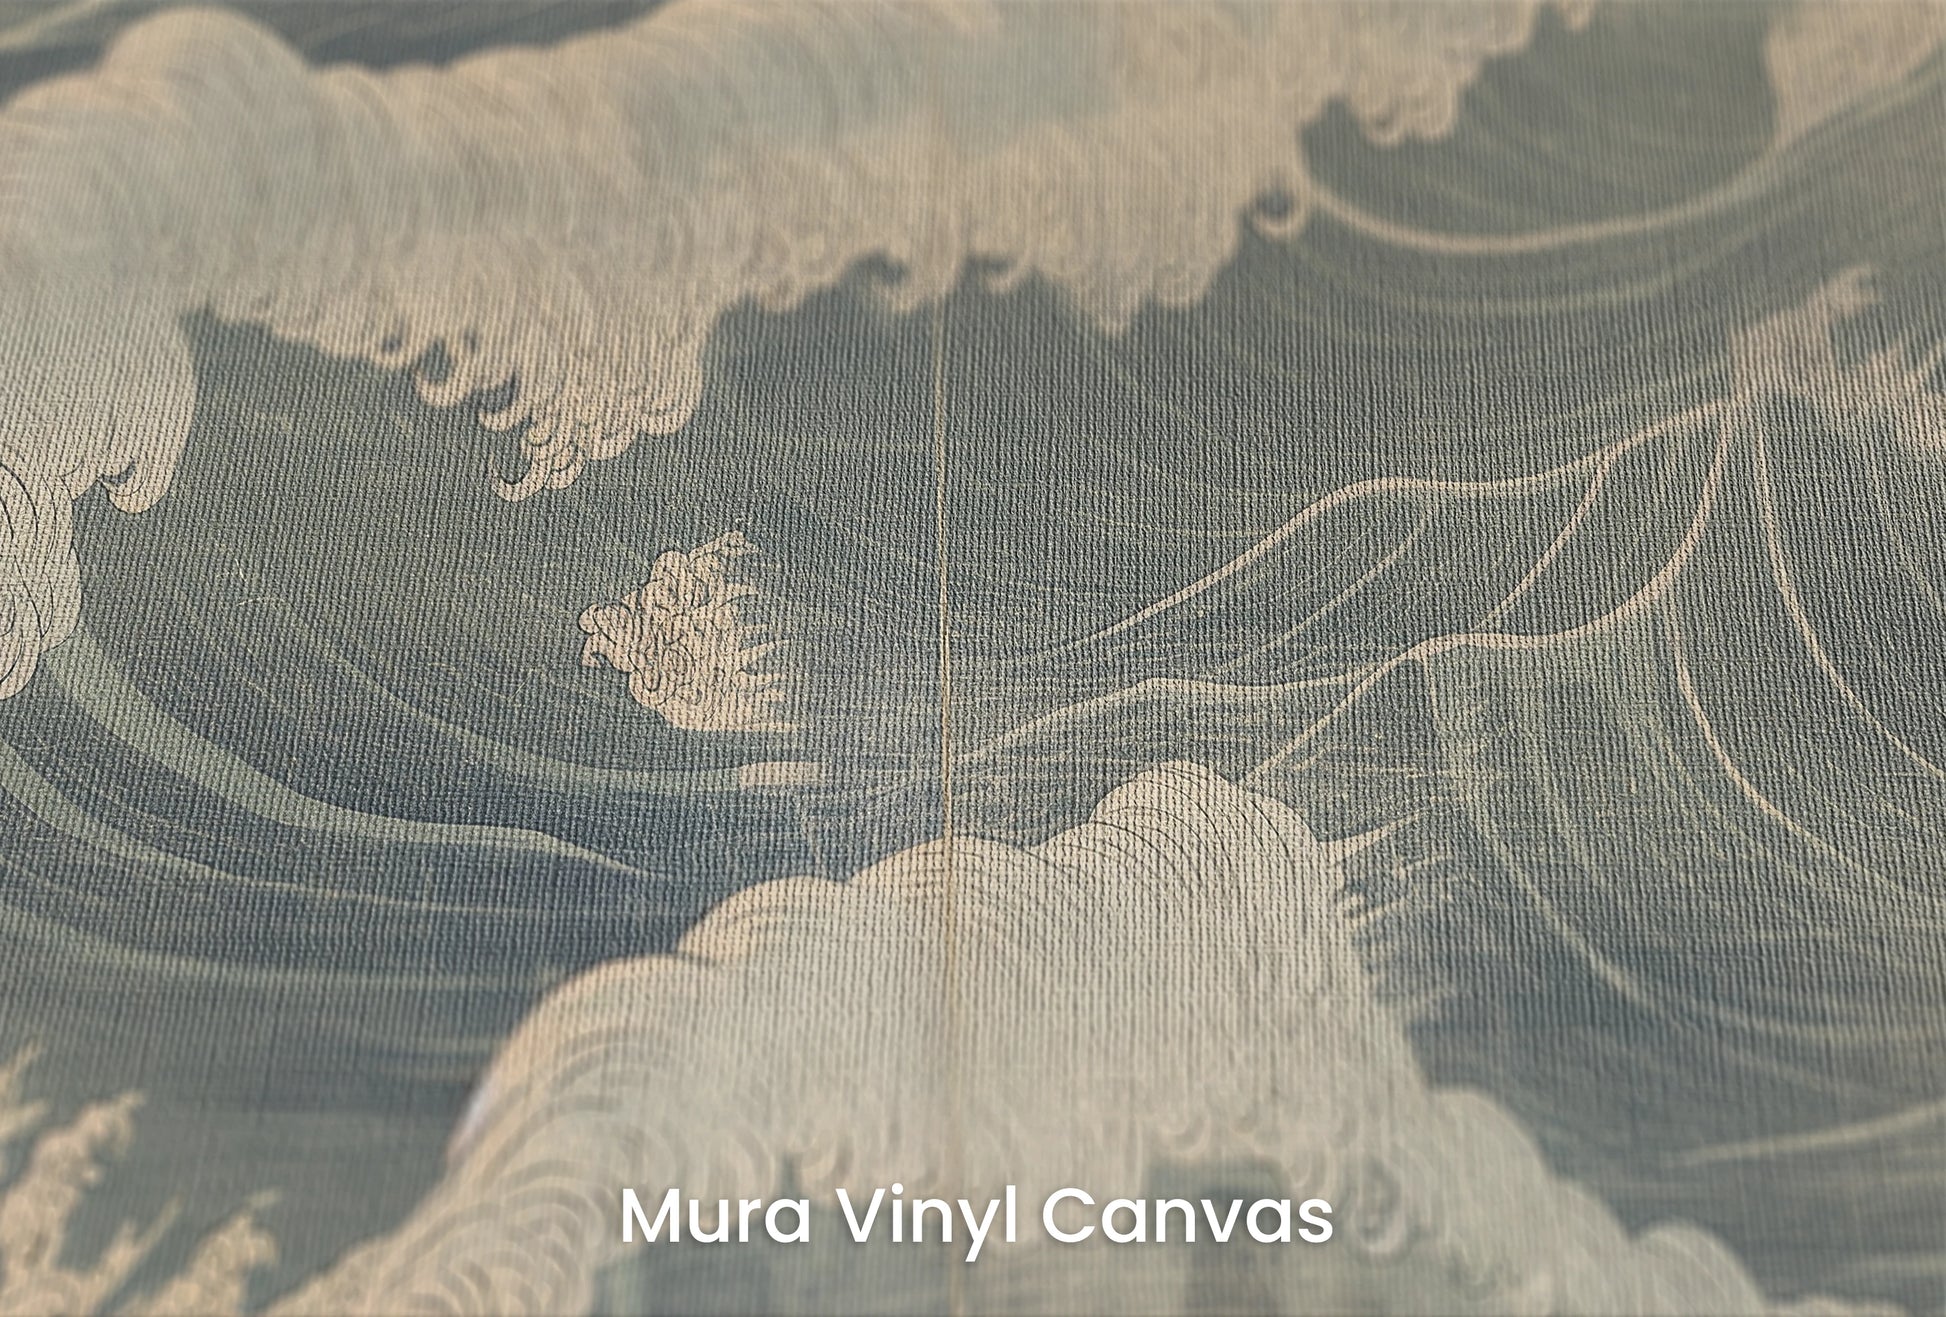 Zbliżenie na artystyczną fototapetę o nazwie Nocturnal Waves na podłożu Mura Vinyl Canvas - faktura naturalnego płótna.